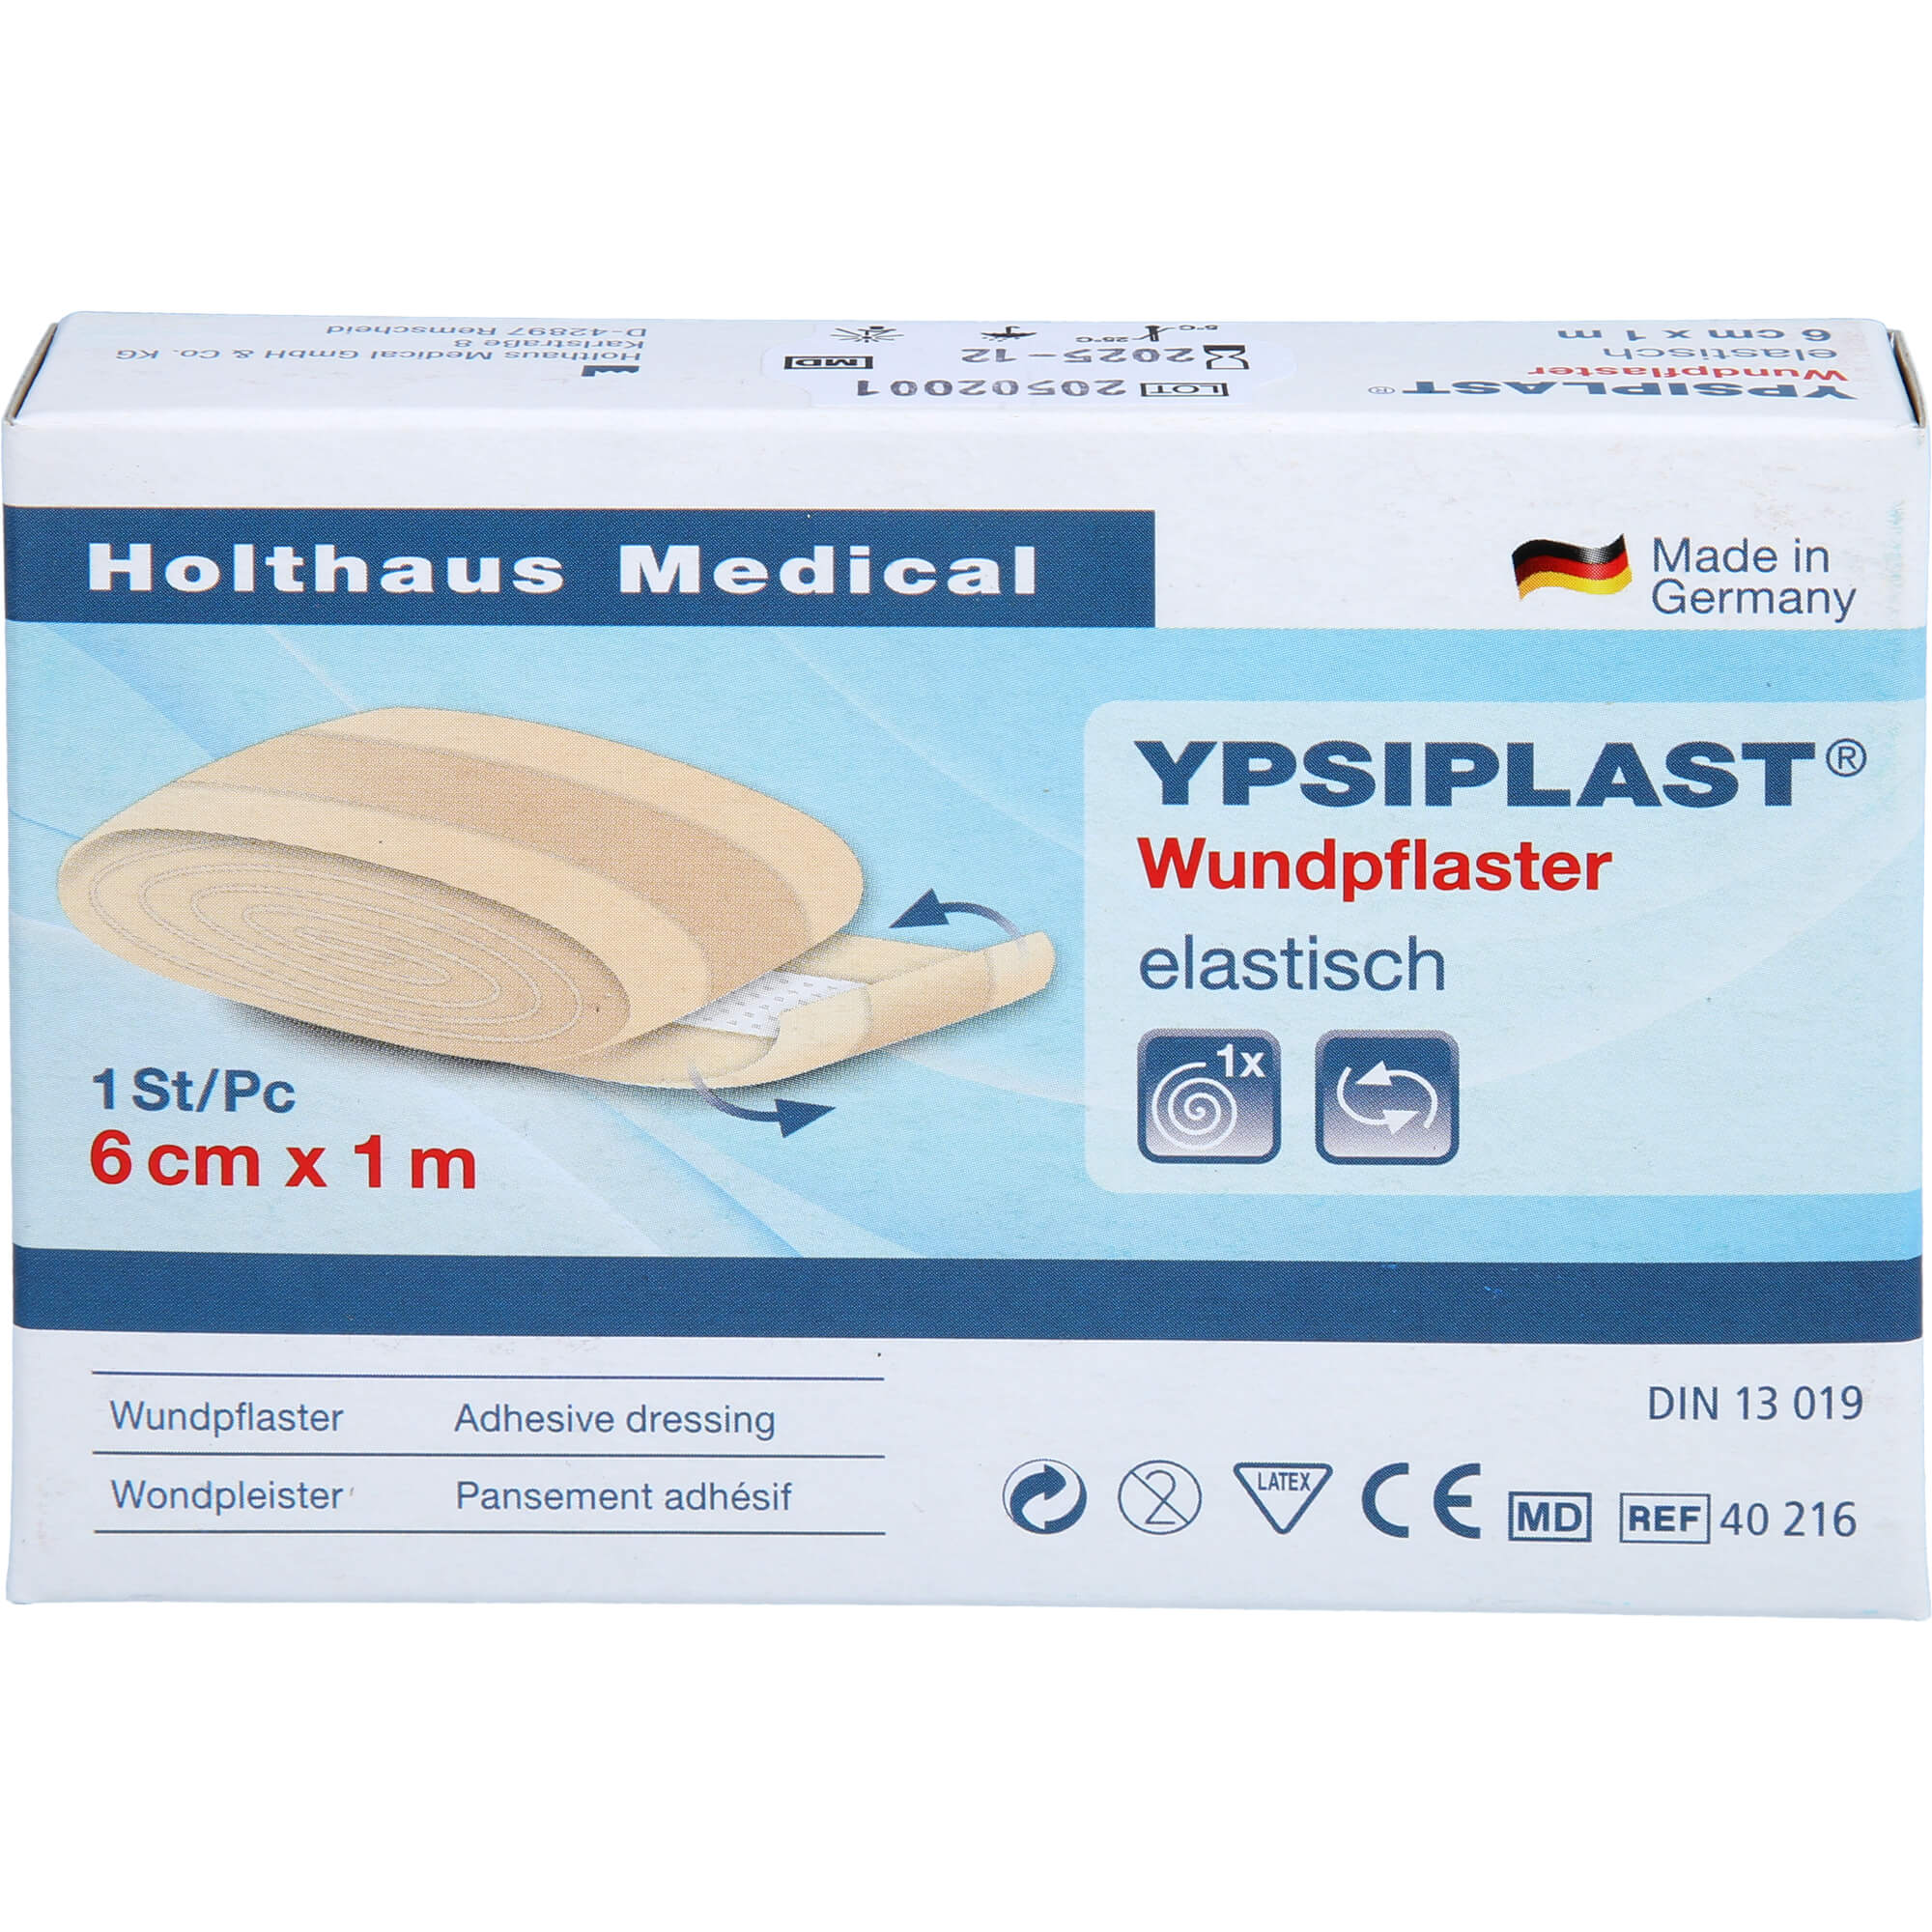 WUNDPFLASTER YPSIPLAST elastisch 6 cmx1 m